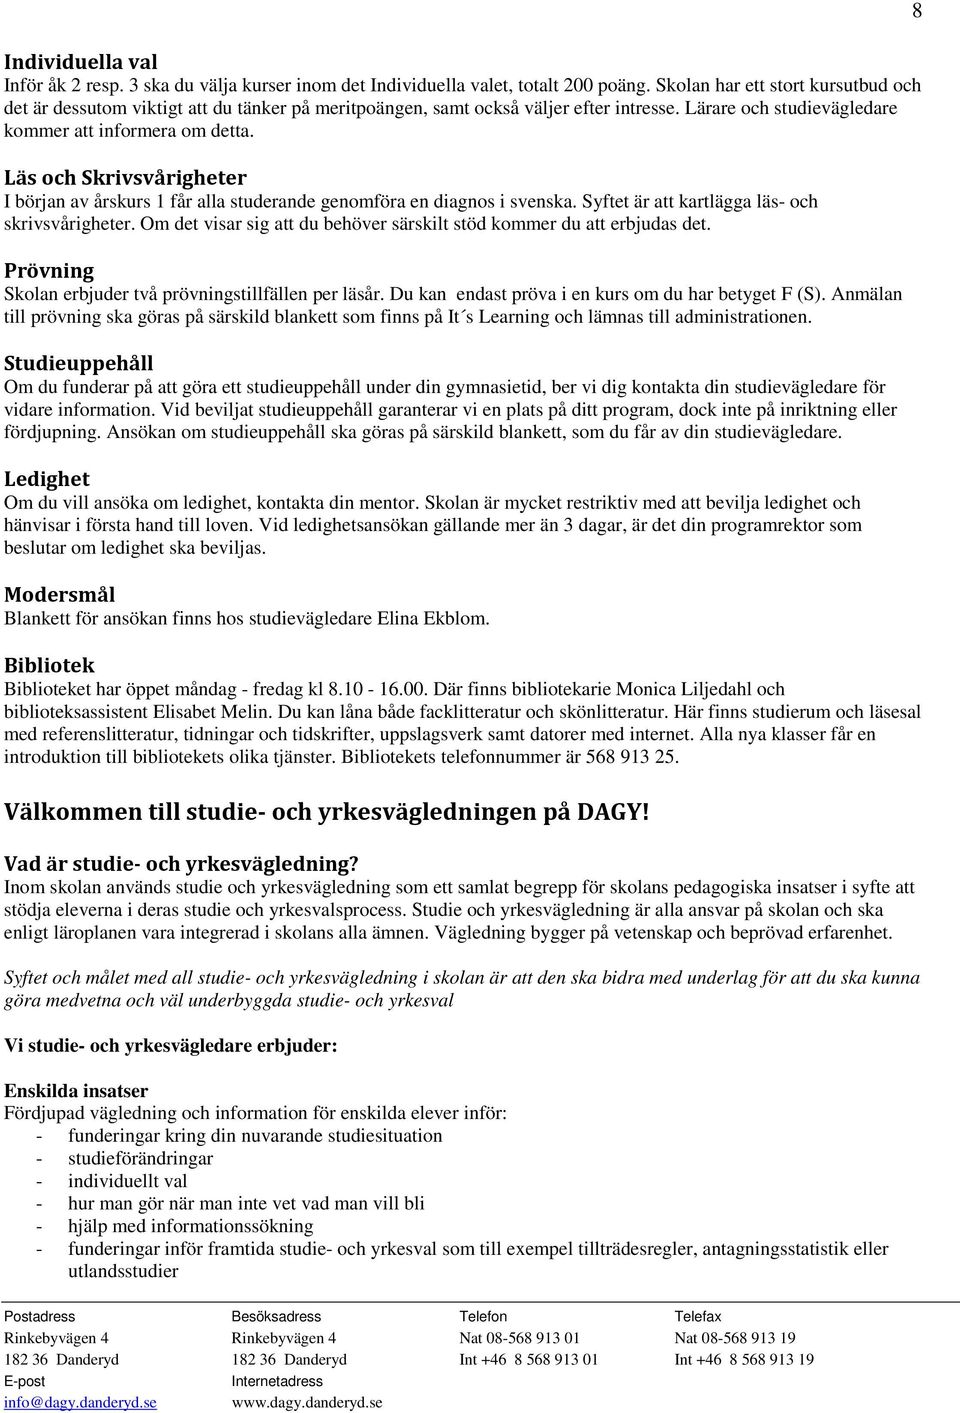 Läs och Skrivsvårigheter I början av årskurs 1 får alla studerande genomföra en diagnos i svenska. Syftet är att kartlägga läs- och skrivsvårigheter.